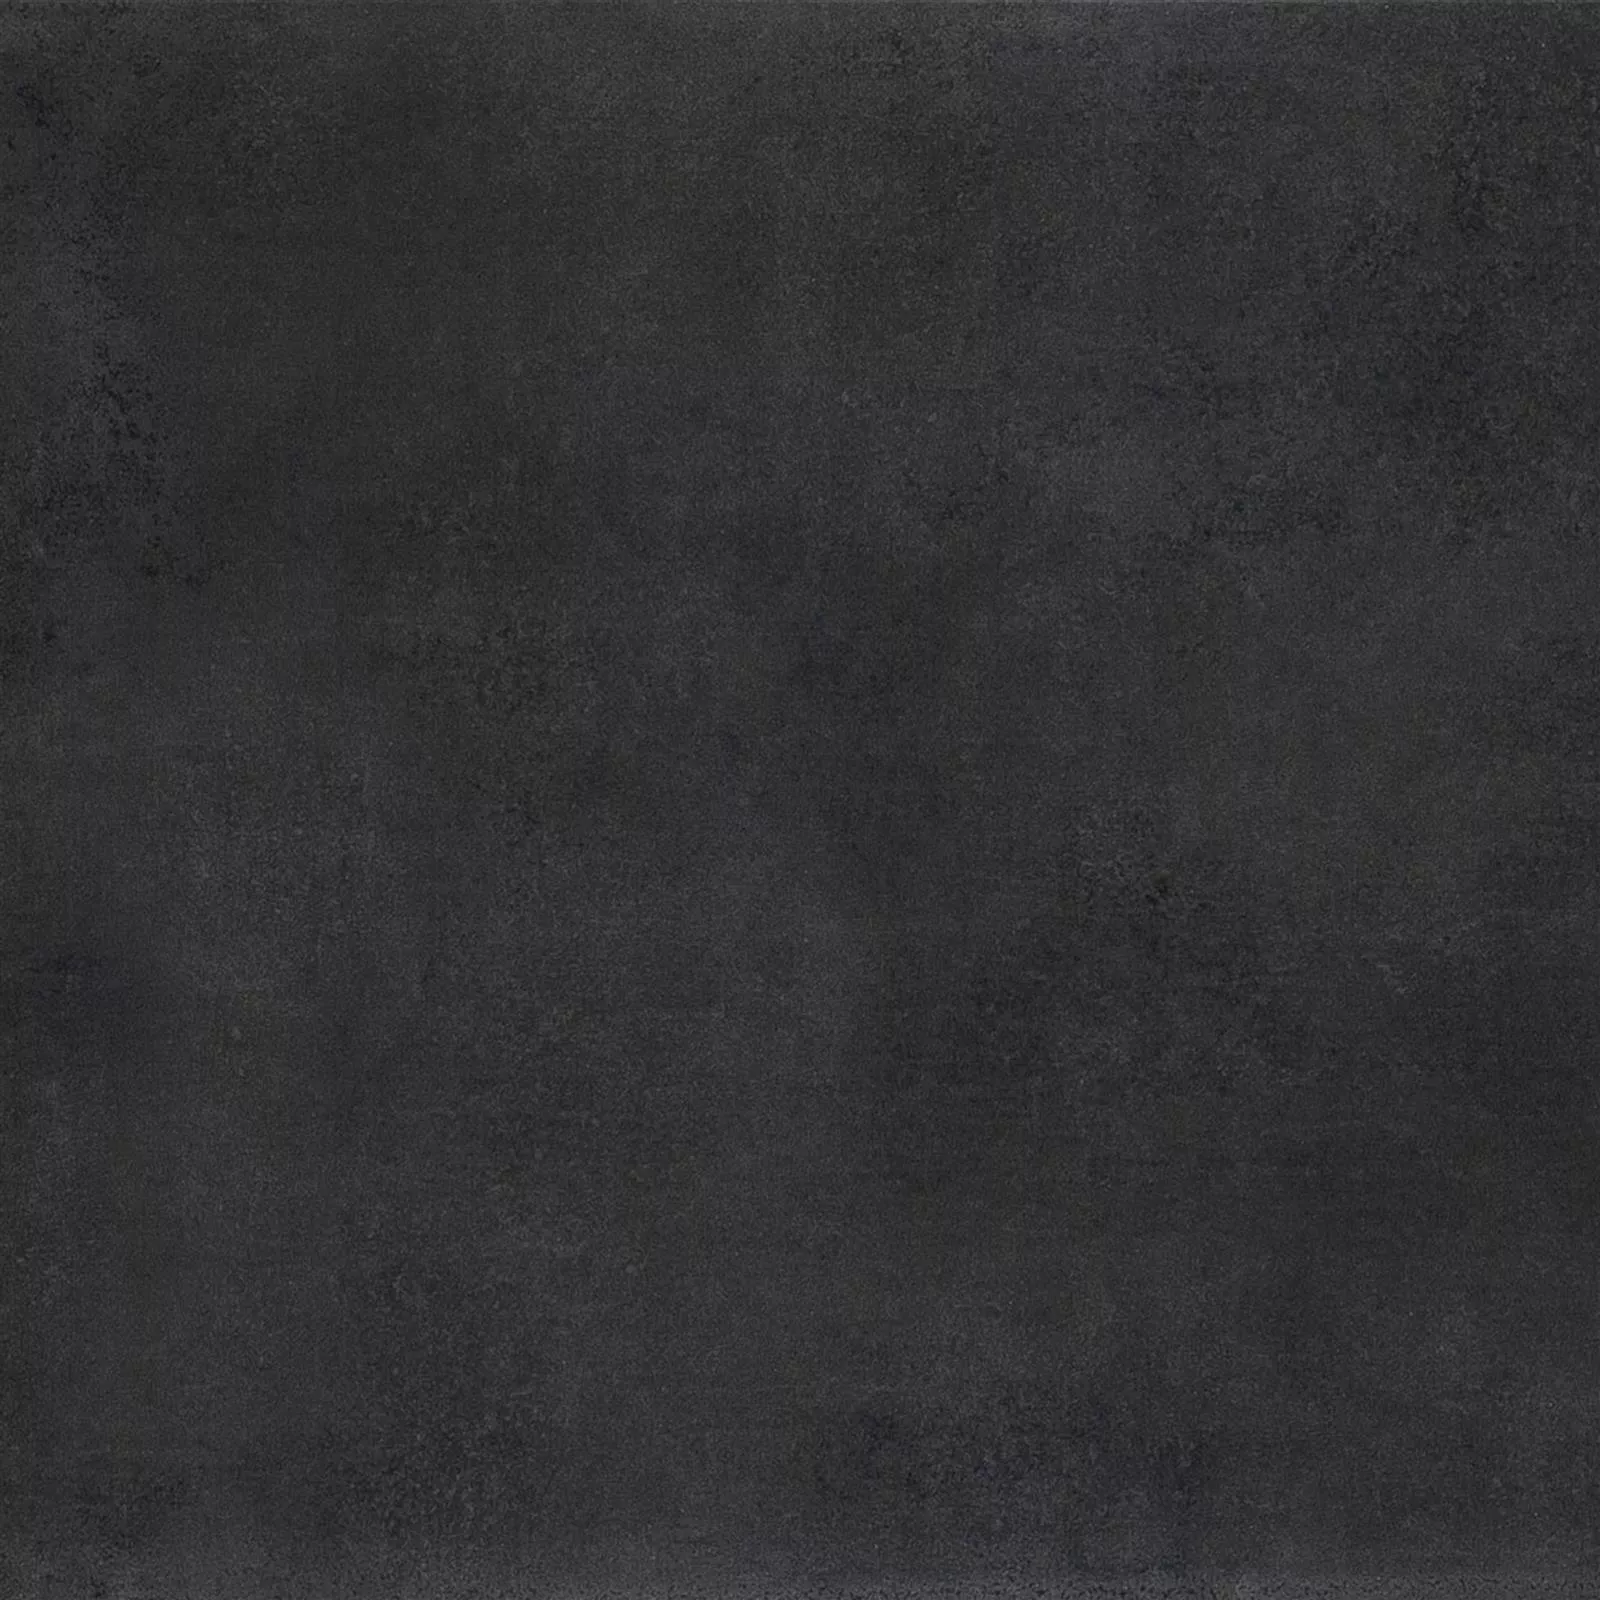 Πλακάκι Δαπέδου Mainland Συγκεκριμένη Εμφάνιση Αμεμπτος 60x60cm Μαύρος